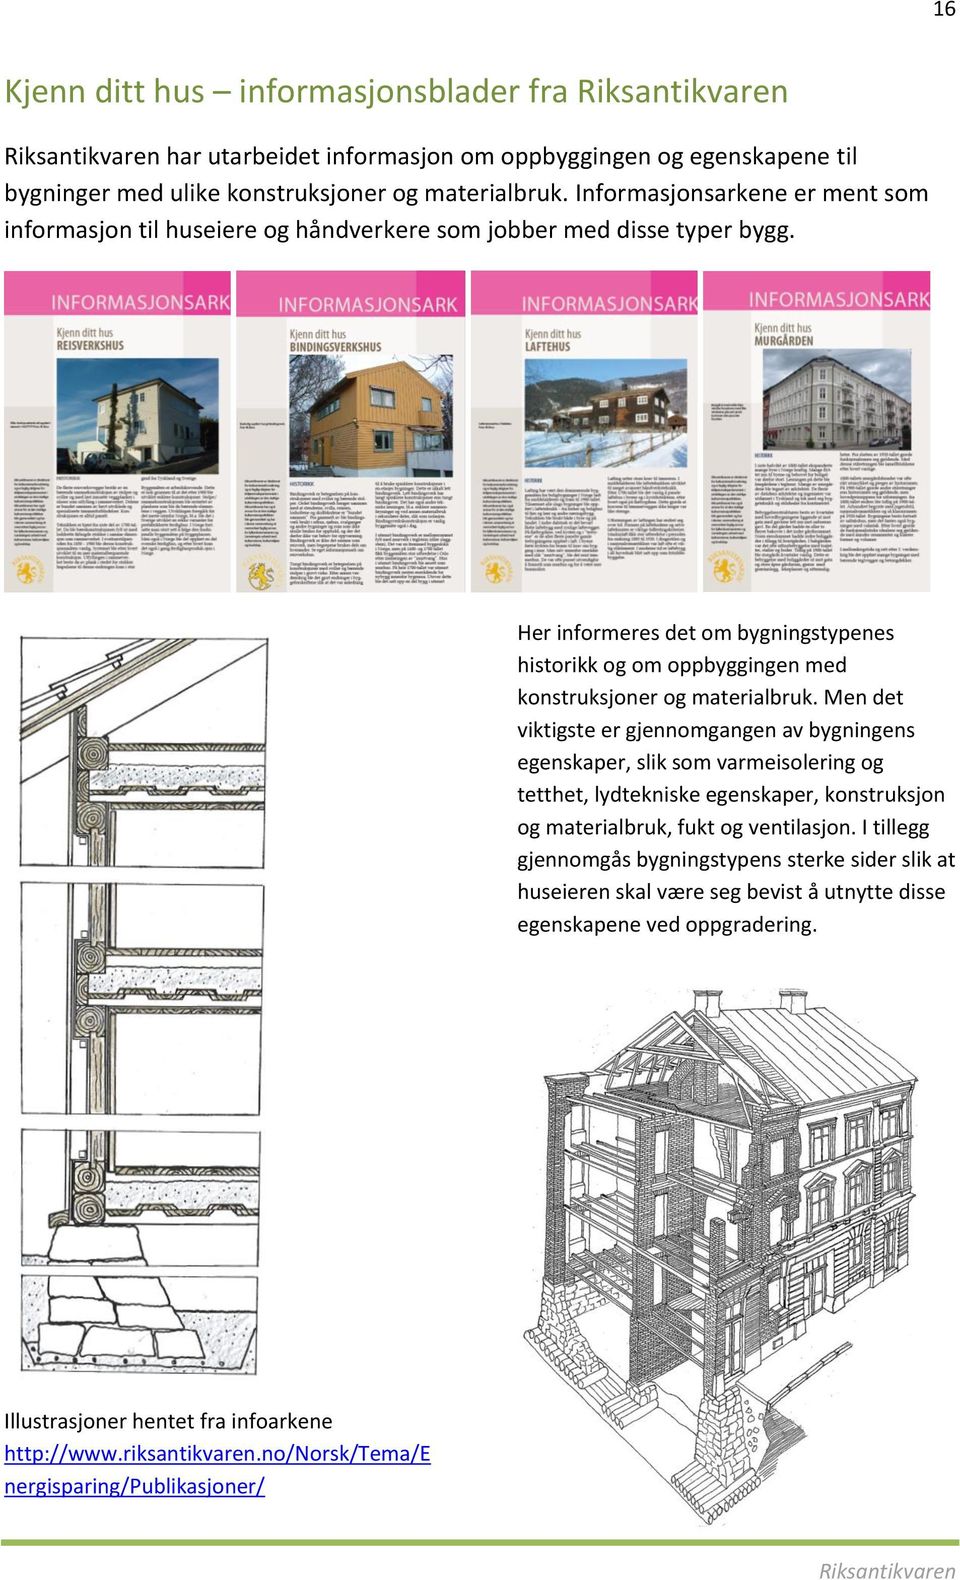 Her informeres det om bygningstypenes historikk og om oppbyggingen med konstruksjoner og materialbruk.